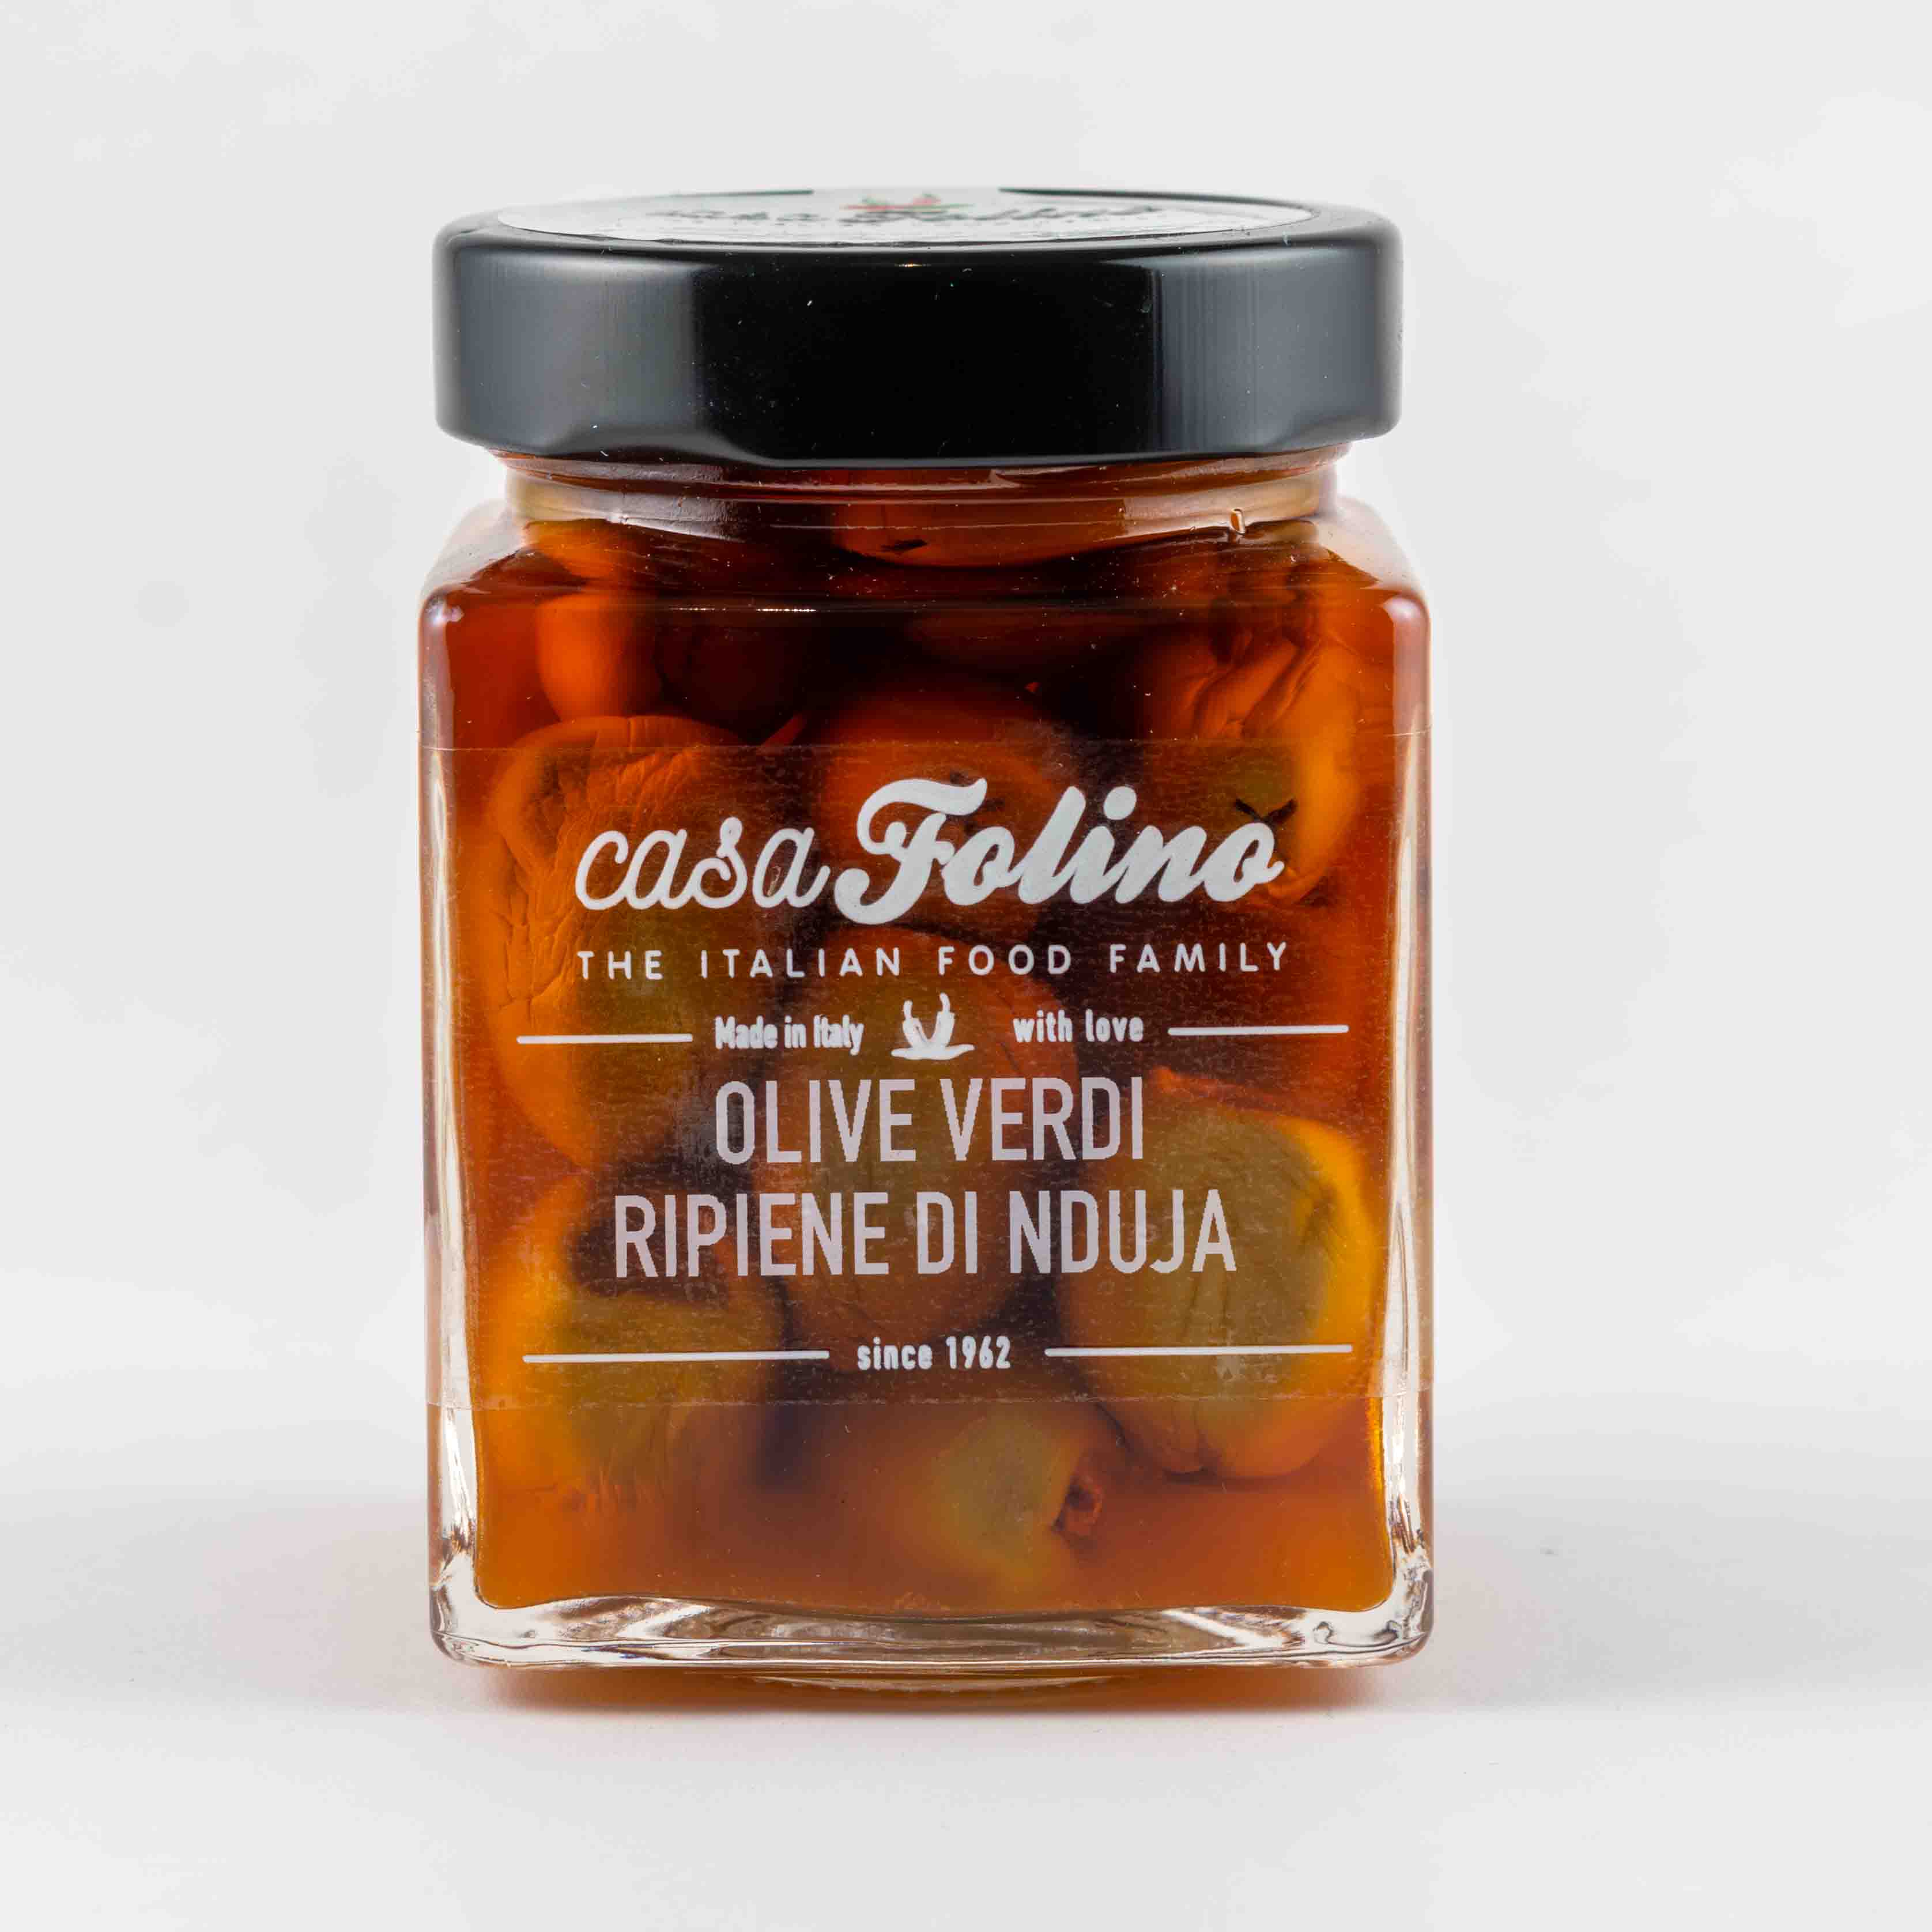 Olive verdi ripiene con Nduja 314ml - Casafolino.com